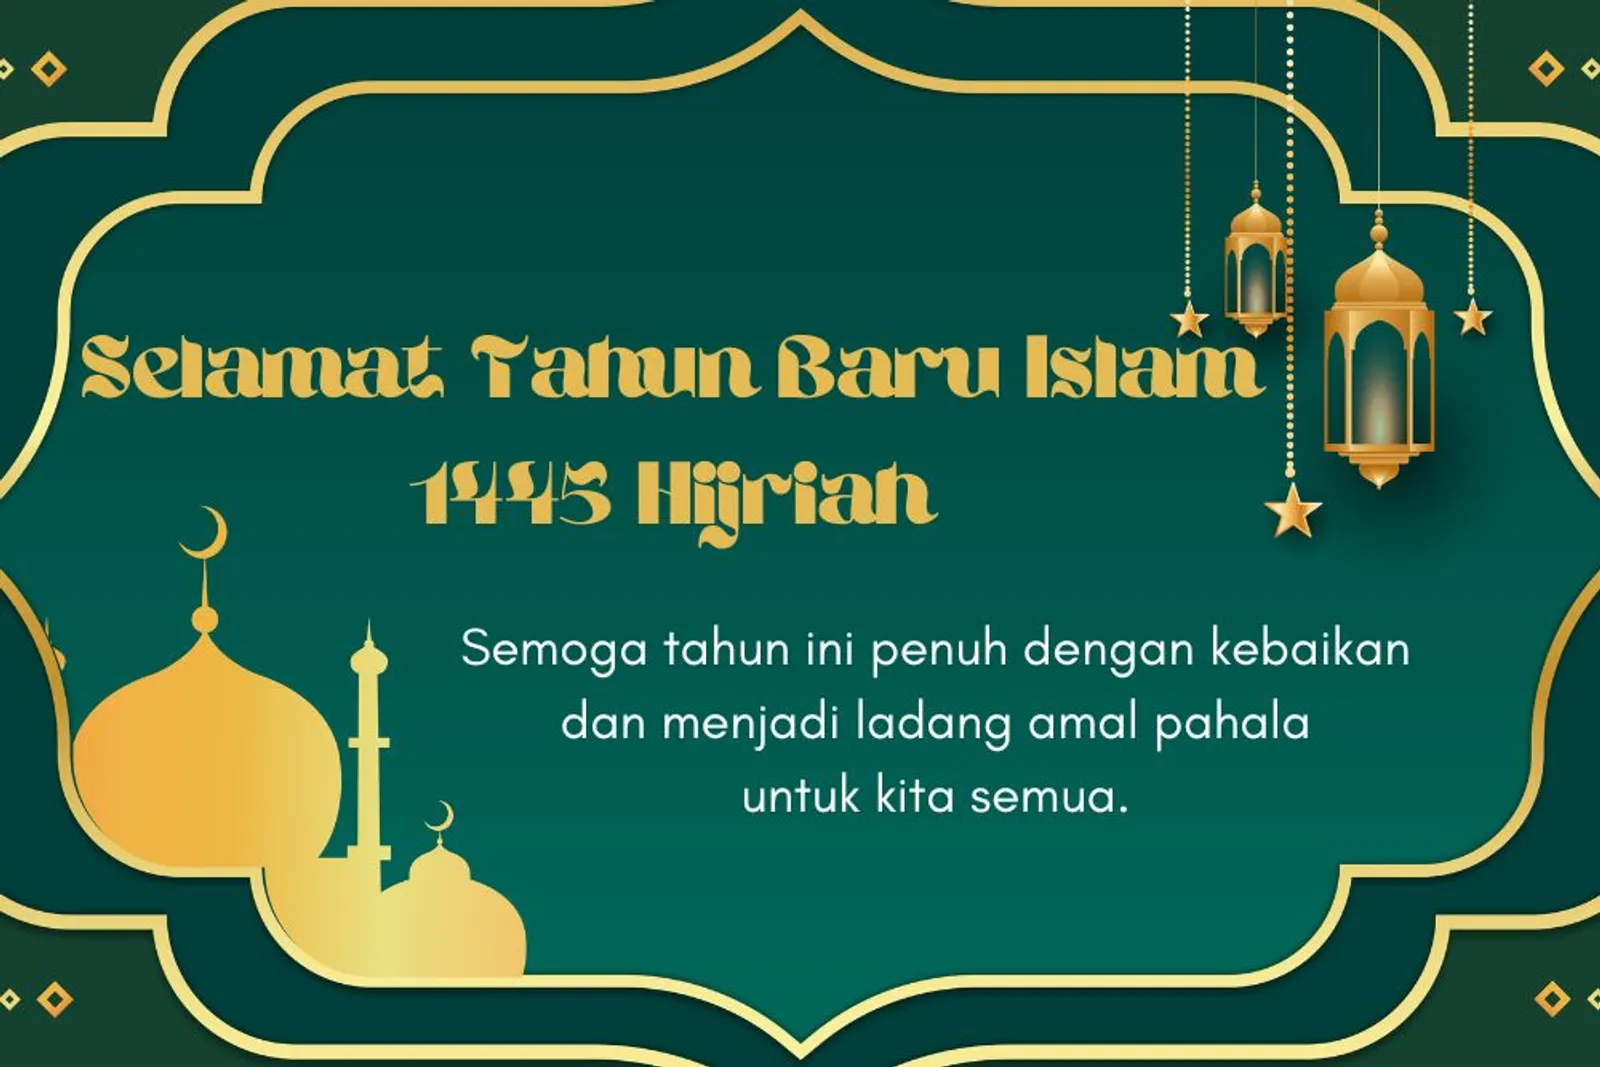 15 Ucapan Tahun Baru Islam 1445 Hijriah, Penuh Harapan dan Doa